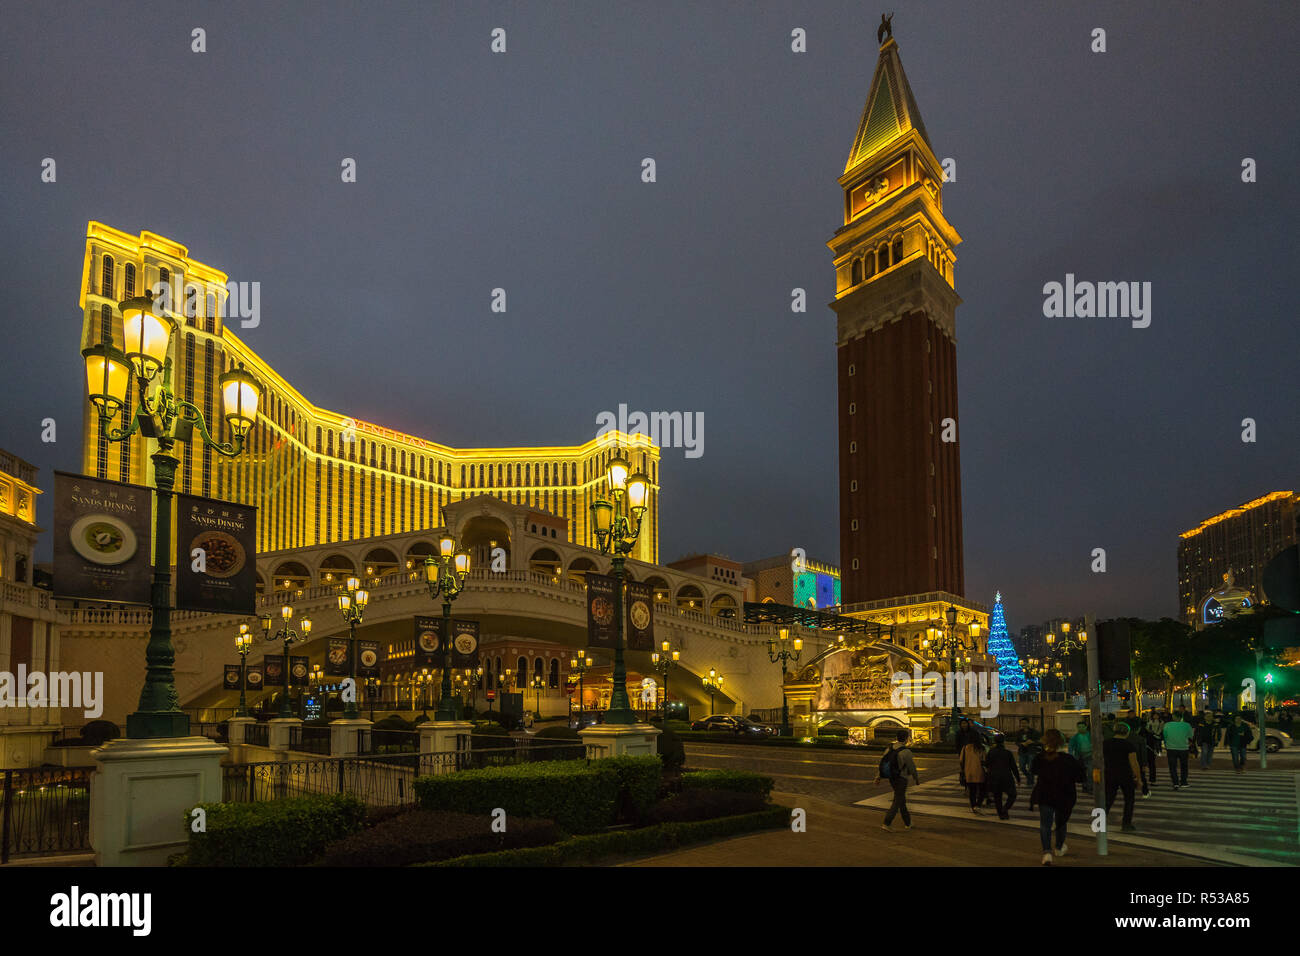 Night view of Venetian hotel and casino. Macau, January 2018 Stock Photo